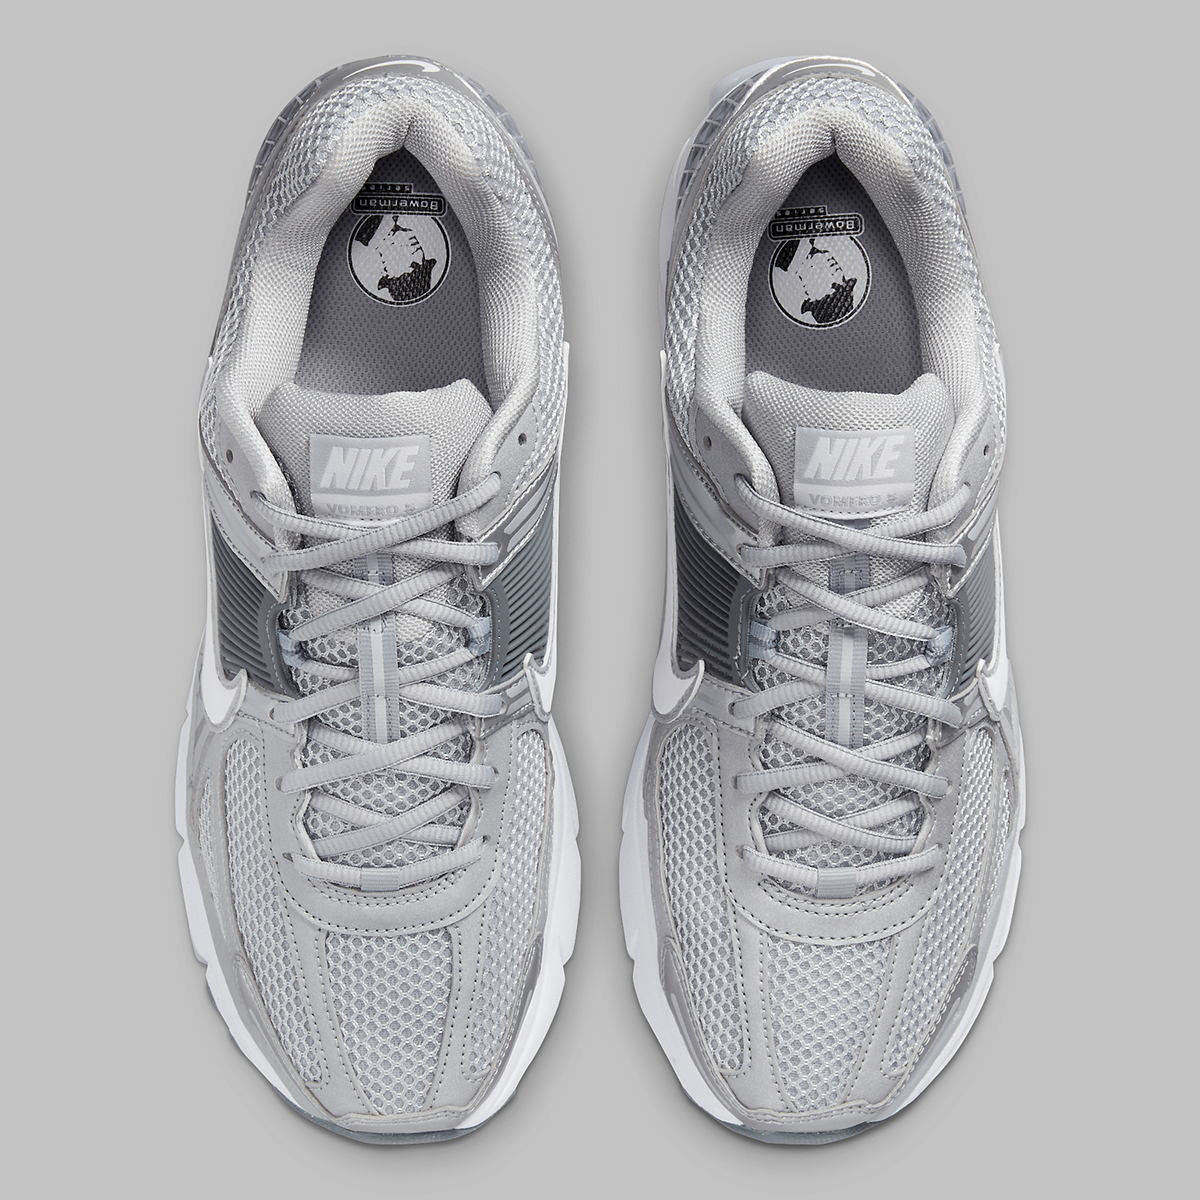 Nike Zoom Vomero 5 Wolf Grey Cool Grey Metallic Silver Fj4151 003 5